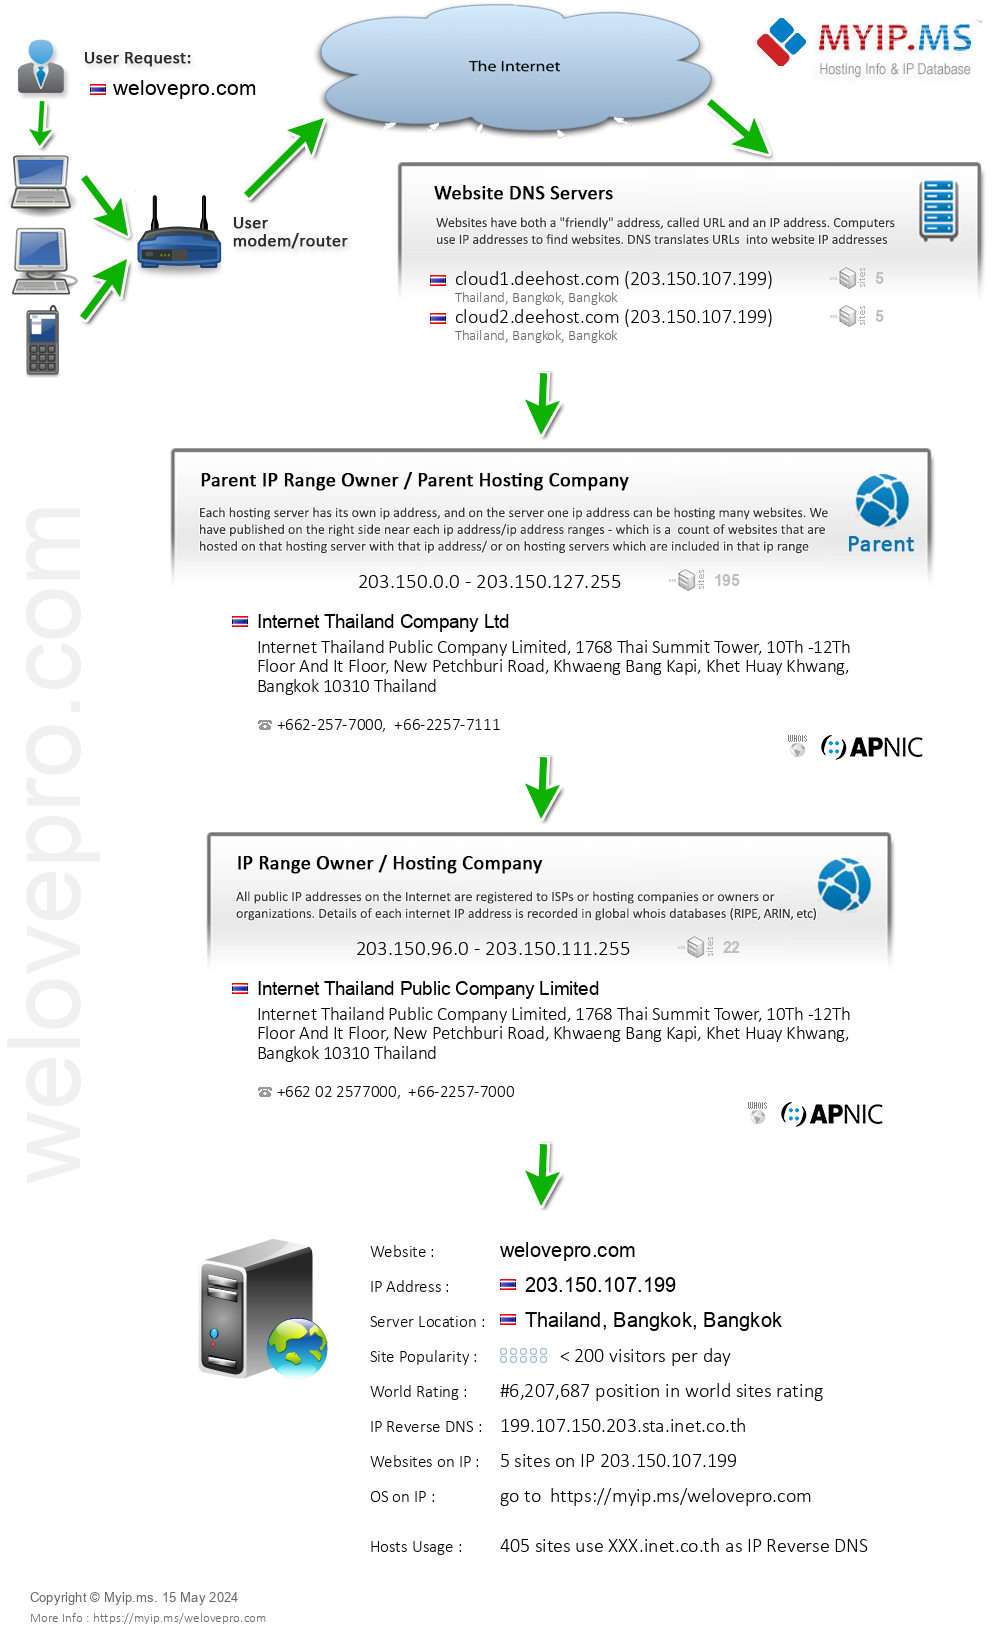 Welovepro.com - Website Hosting Visual IP Diagram